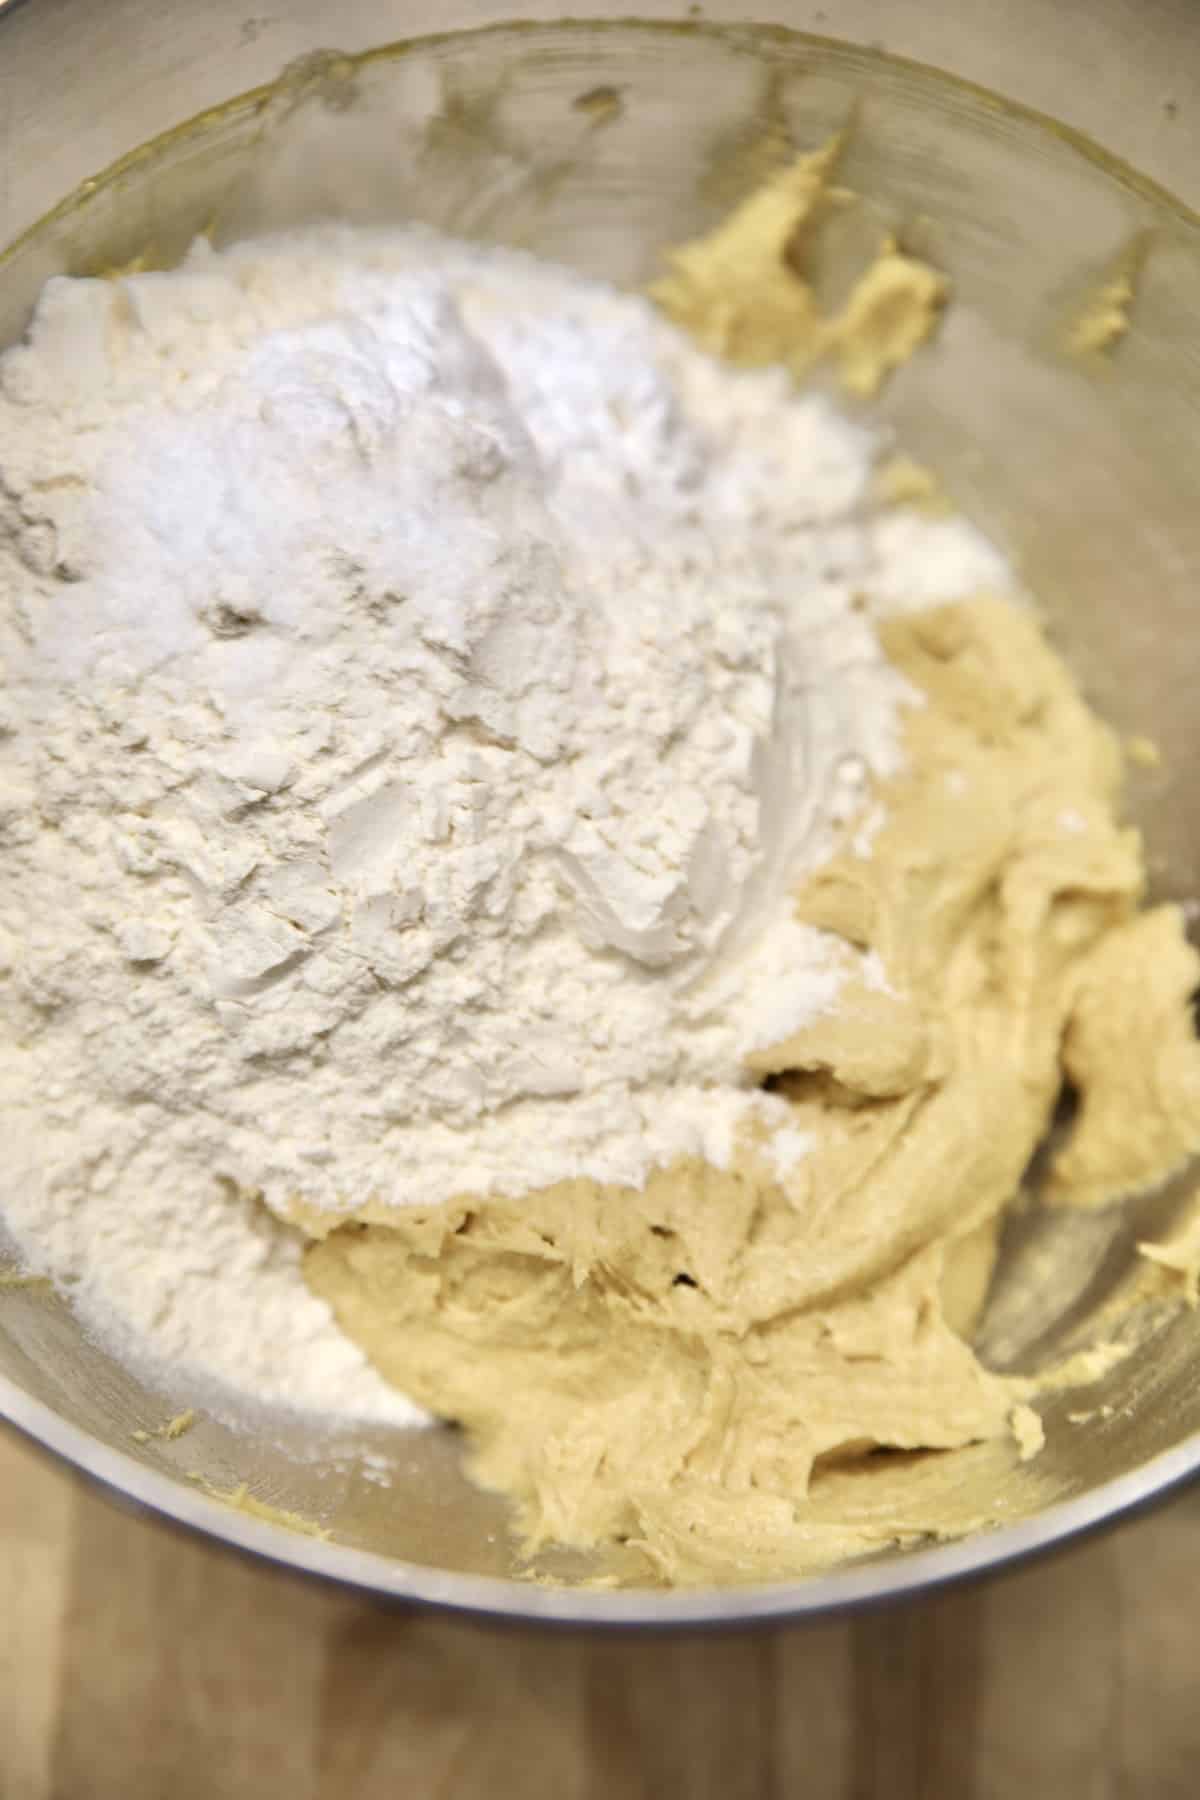 Adding flour to cookie dough in a mixer bowl.